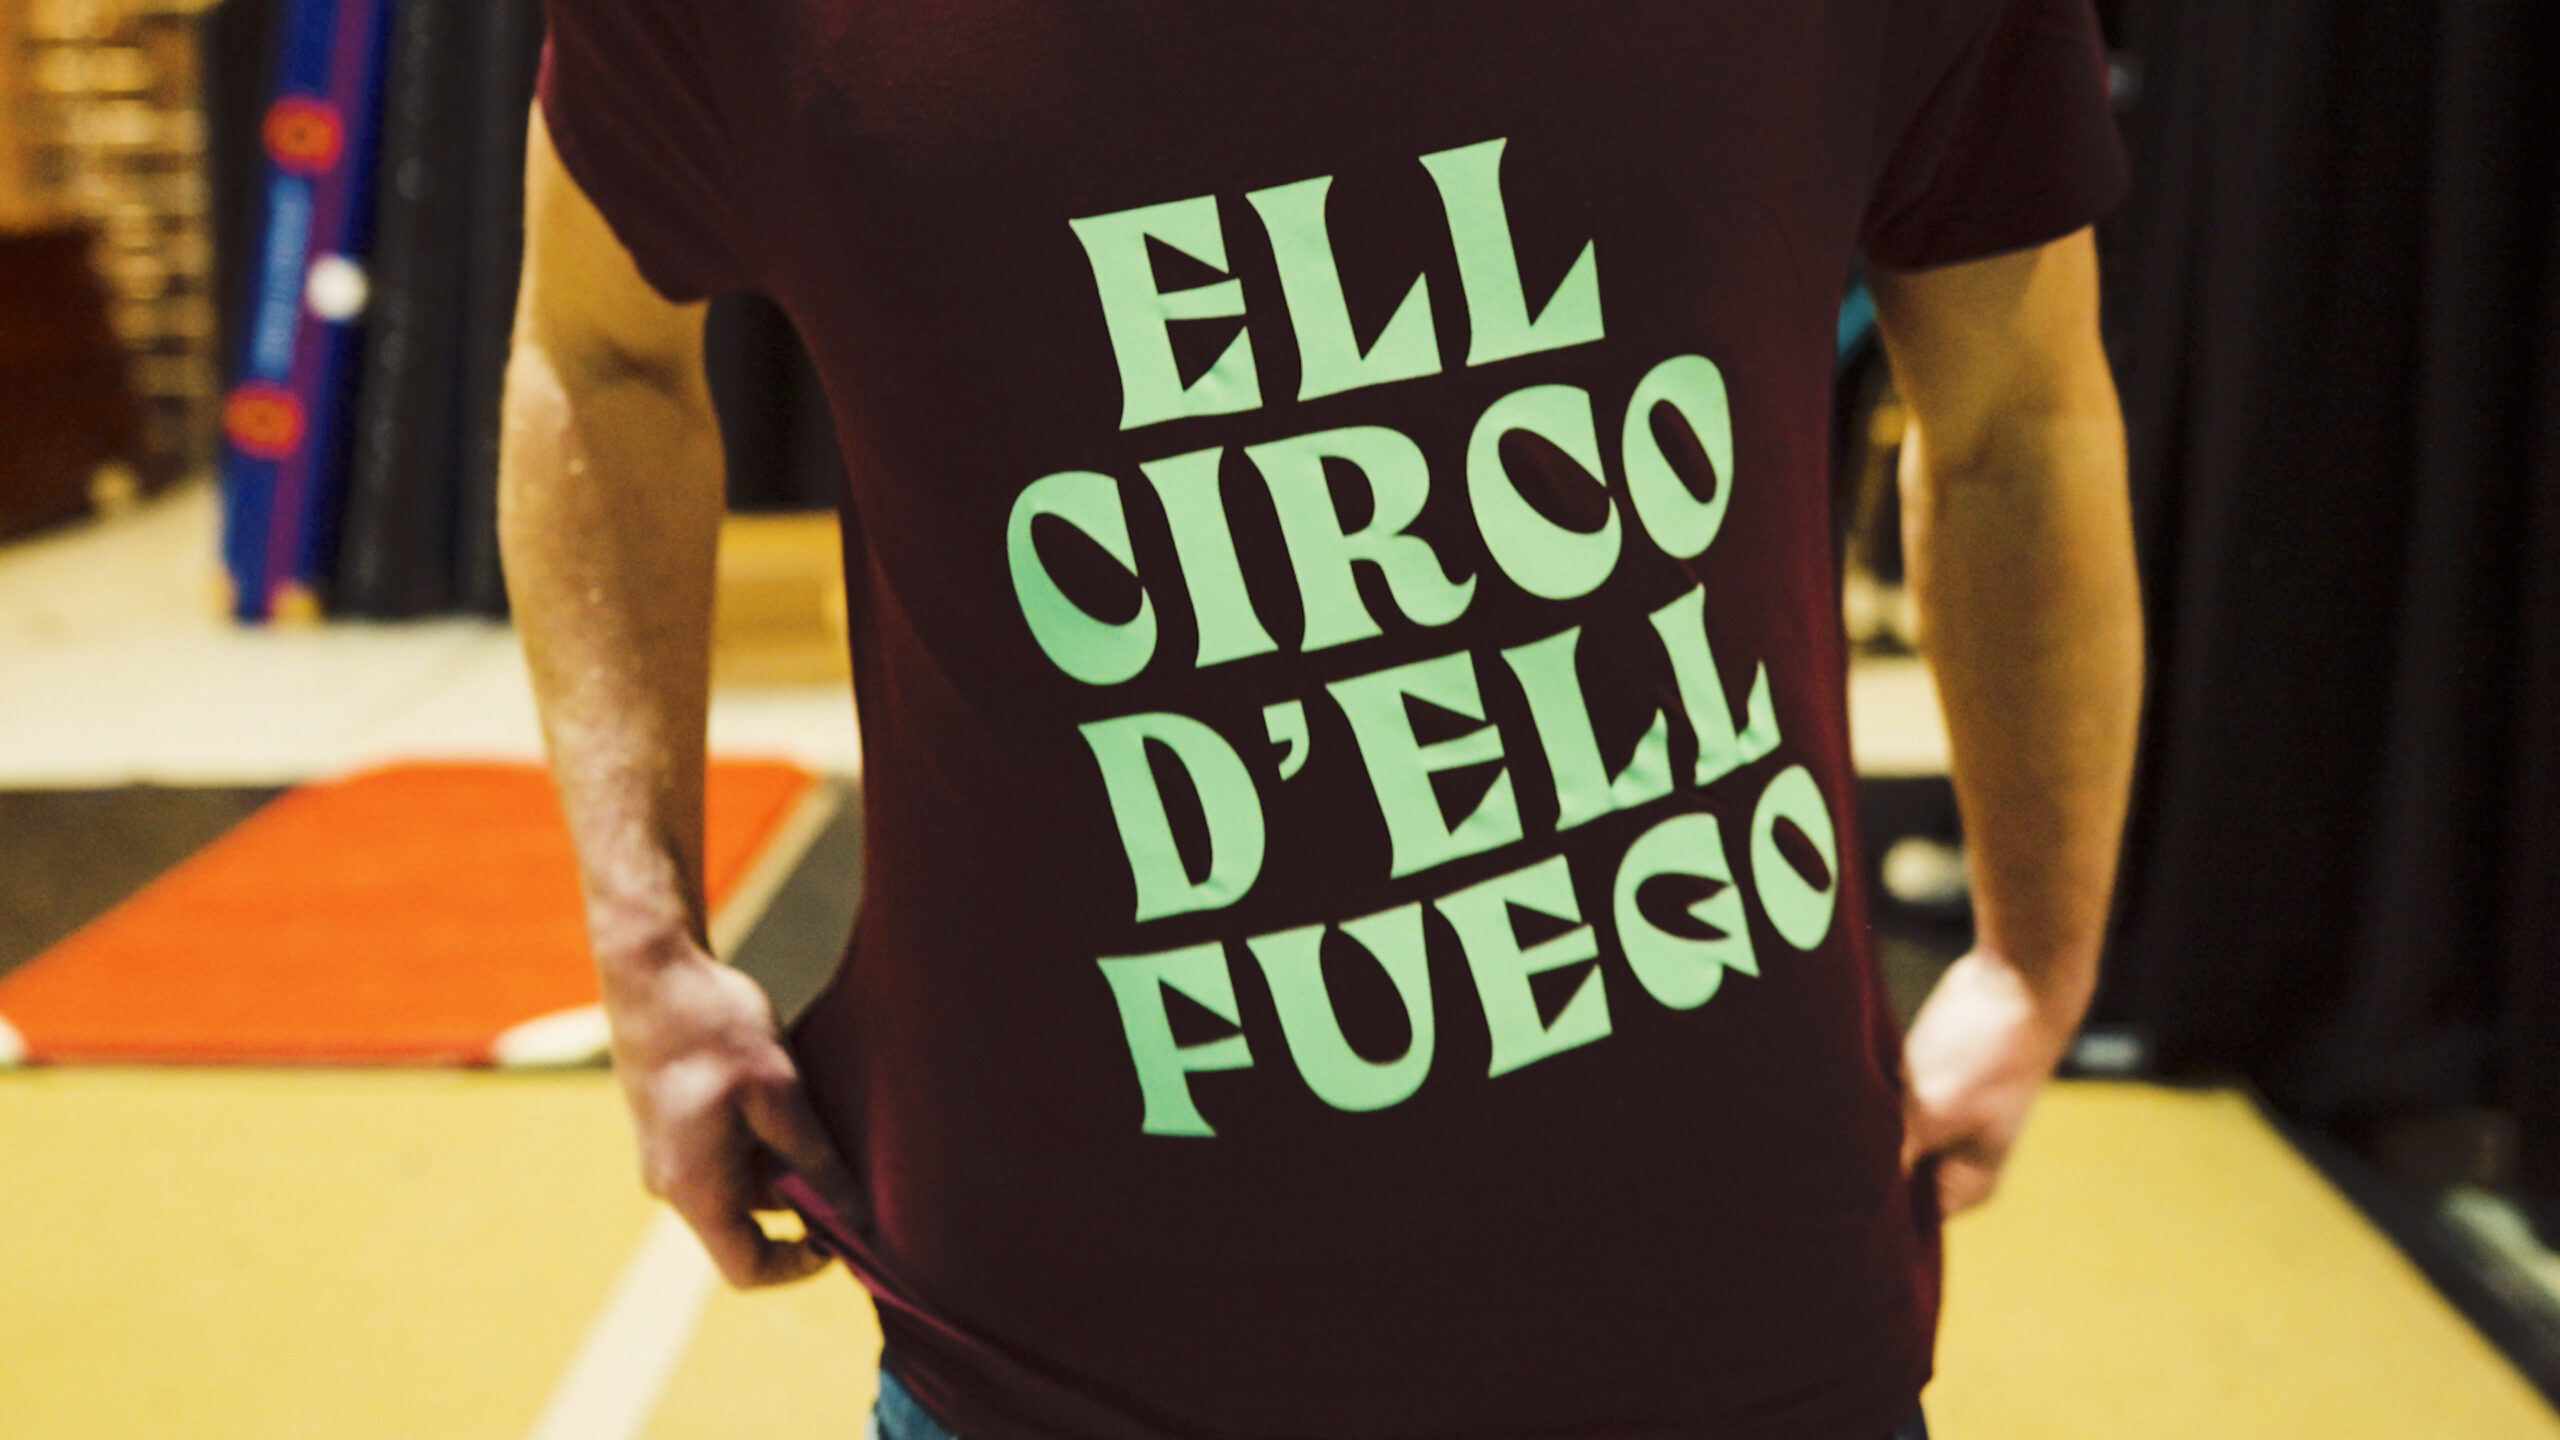 Ell Circo D'ell Fuego, nieuwe t-shirts en truien